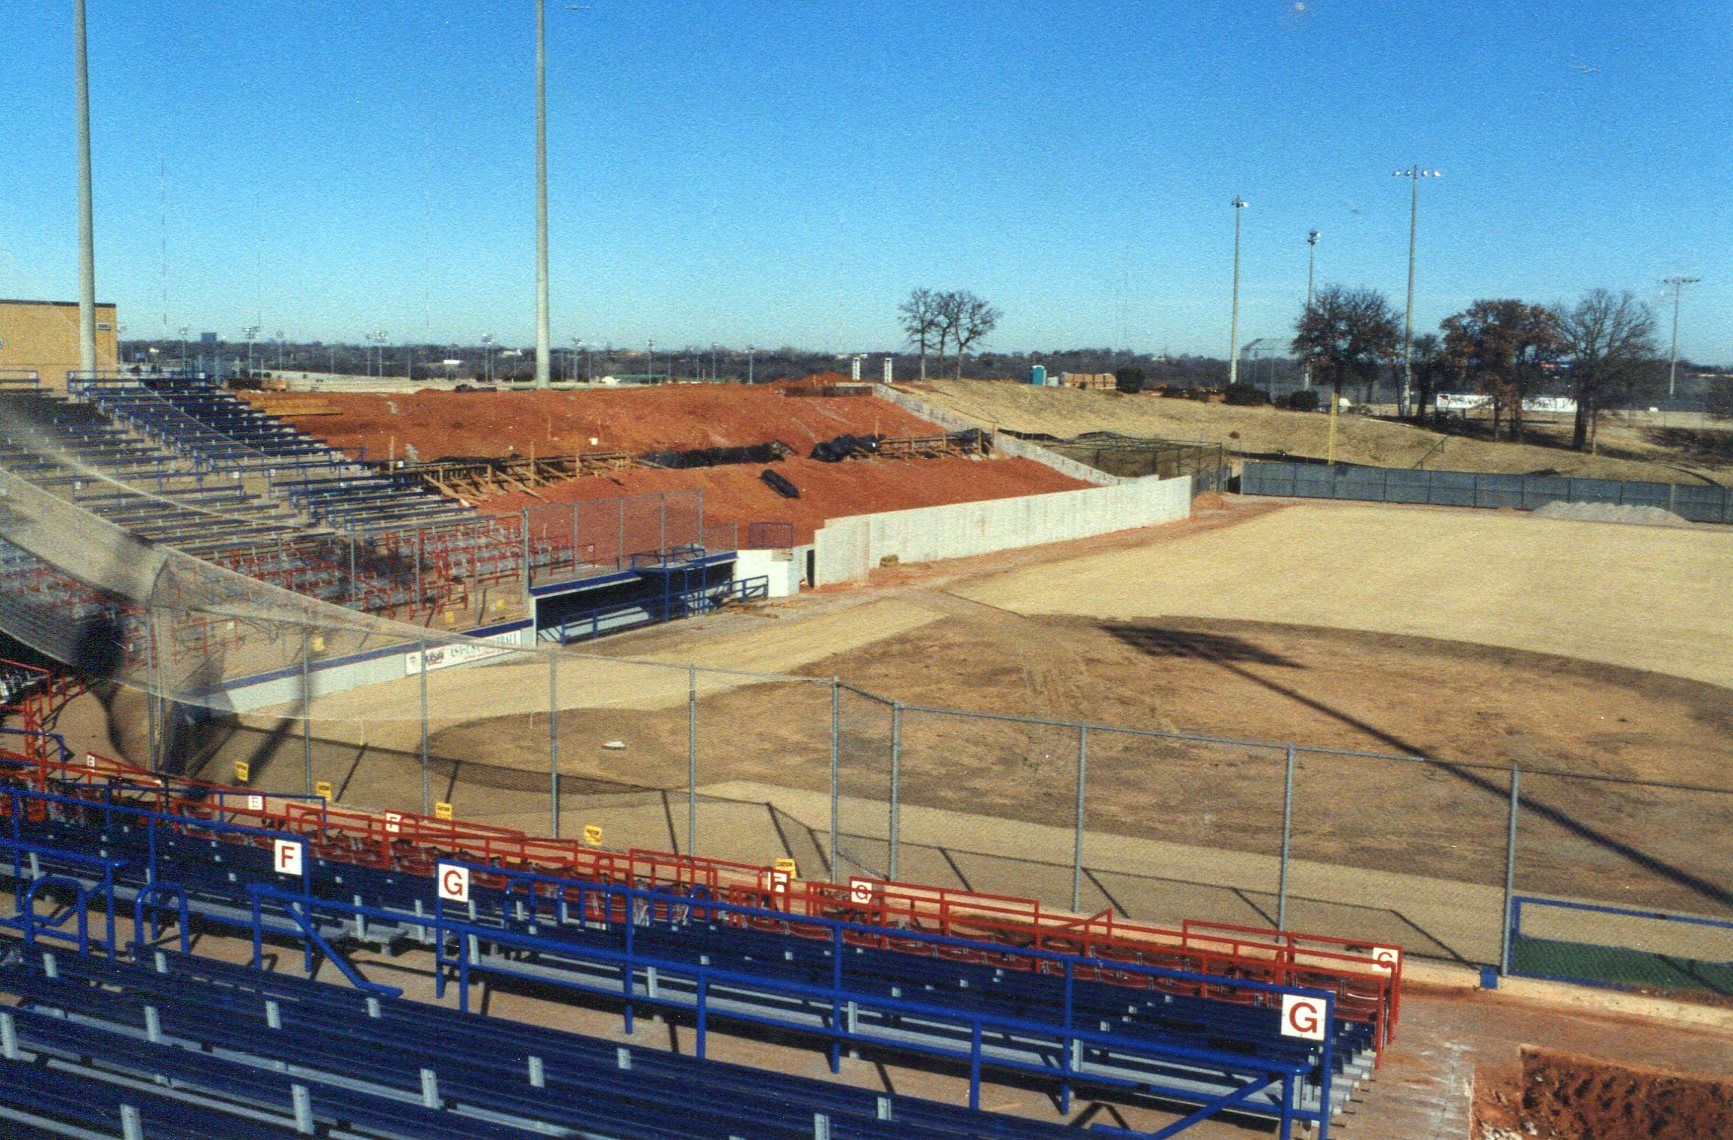 stadium in construction